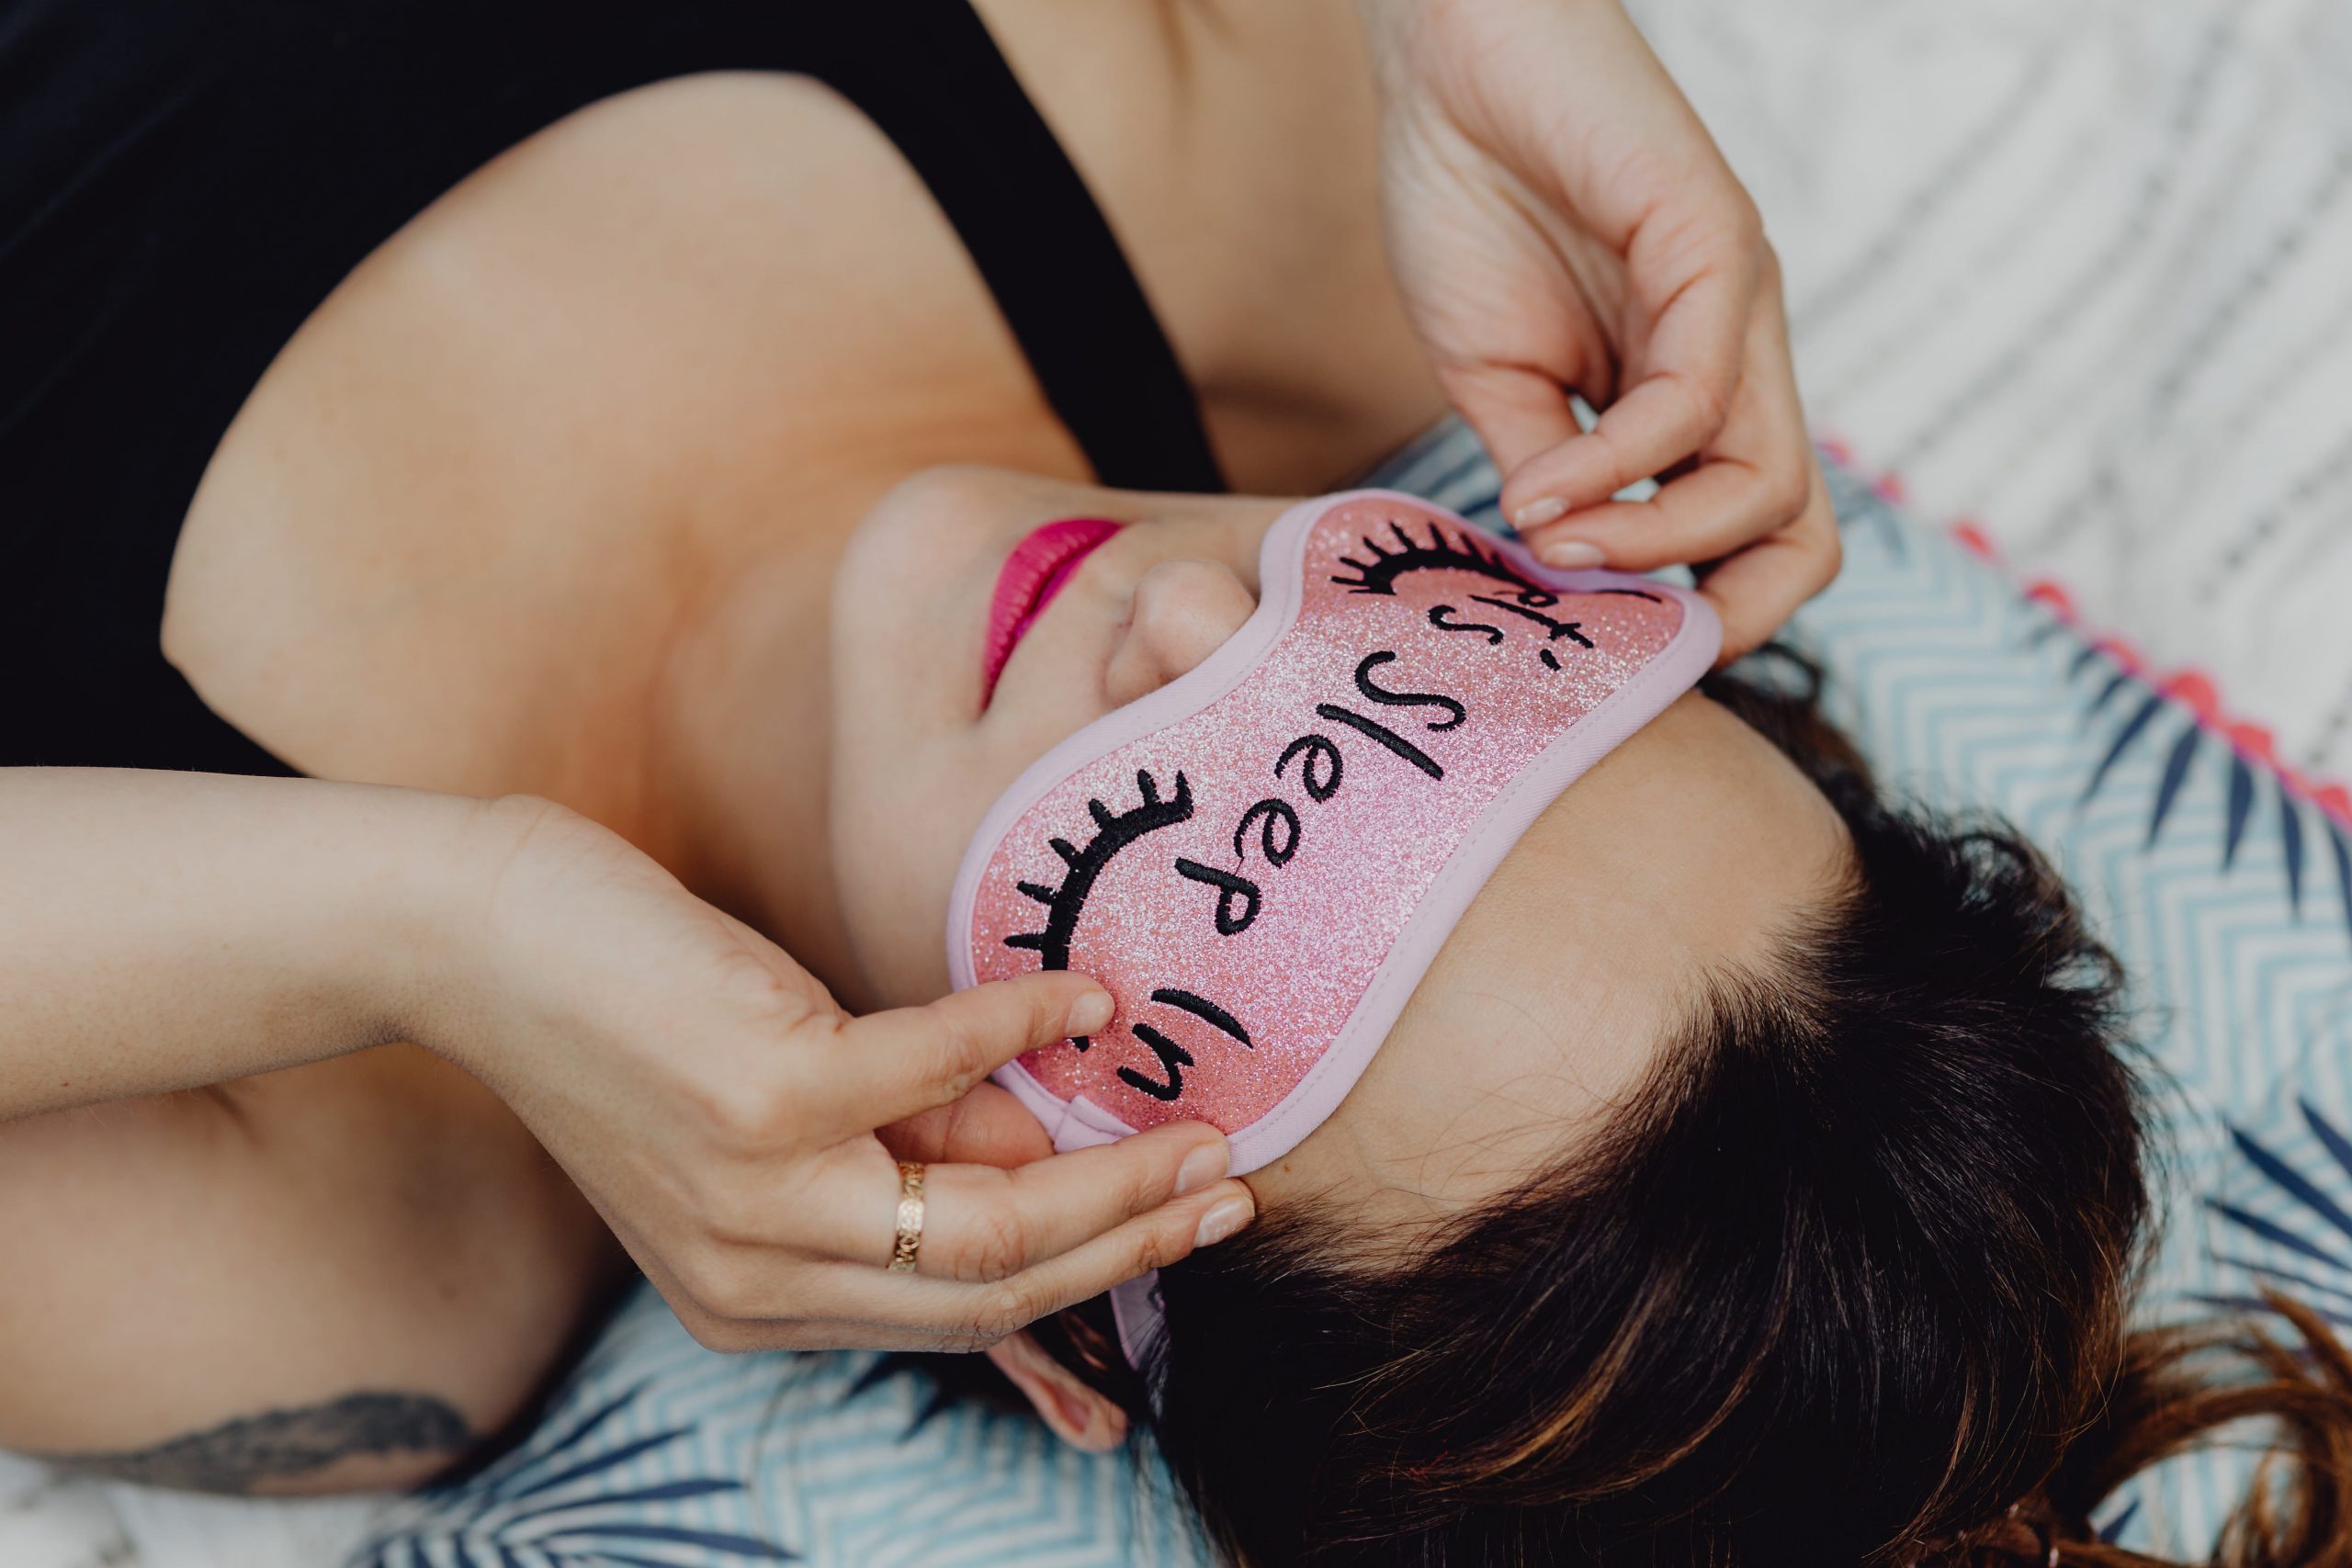 Joyful girl relaxing in bedroom - top view of brunette women in pink sleeping mask wallpaper